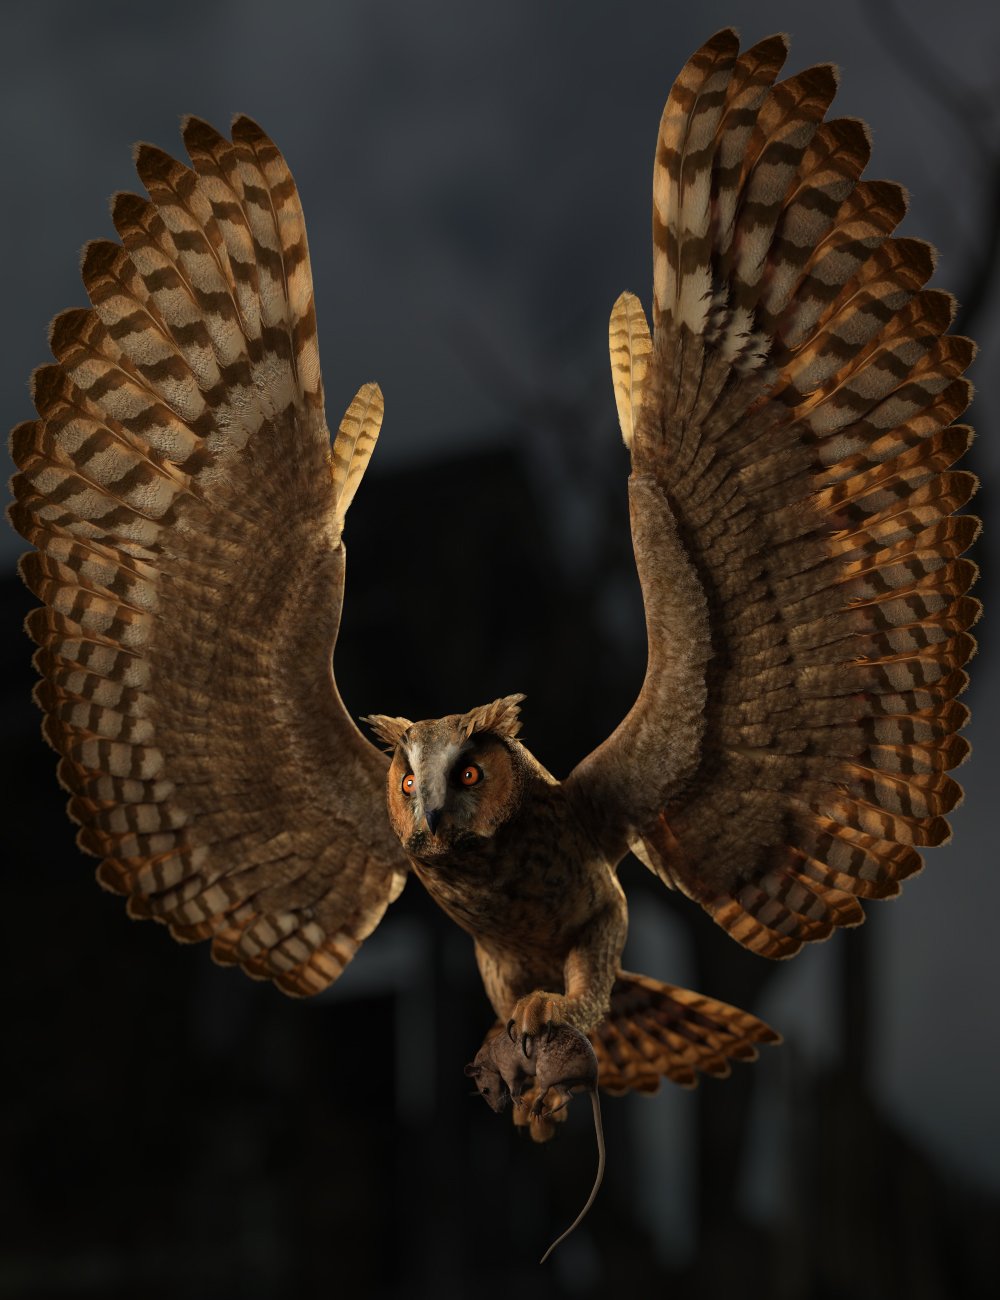 DS Fantasy Owl Species by: Deepsea, 3D Models by Daz 3D